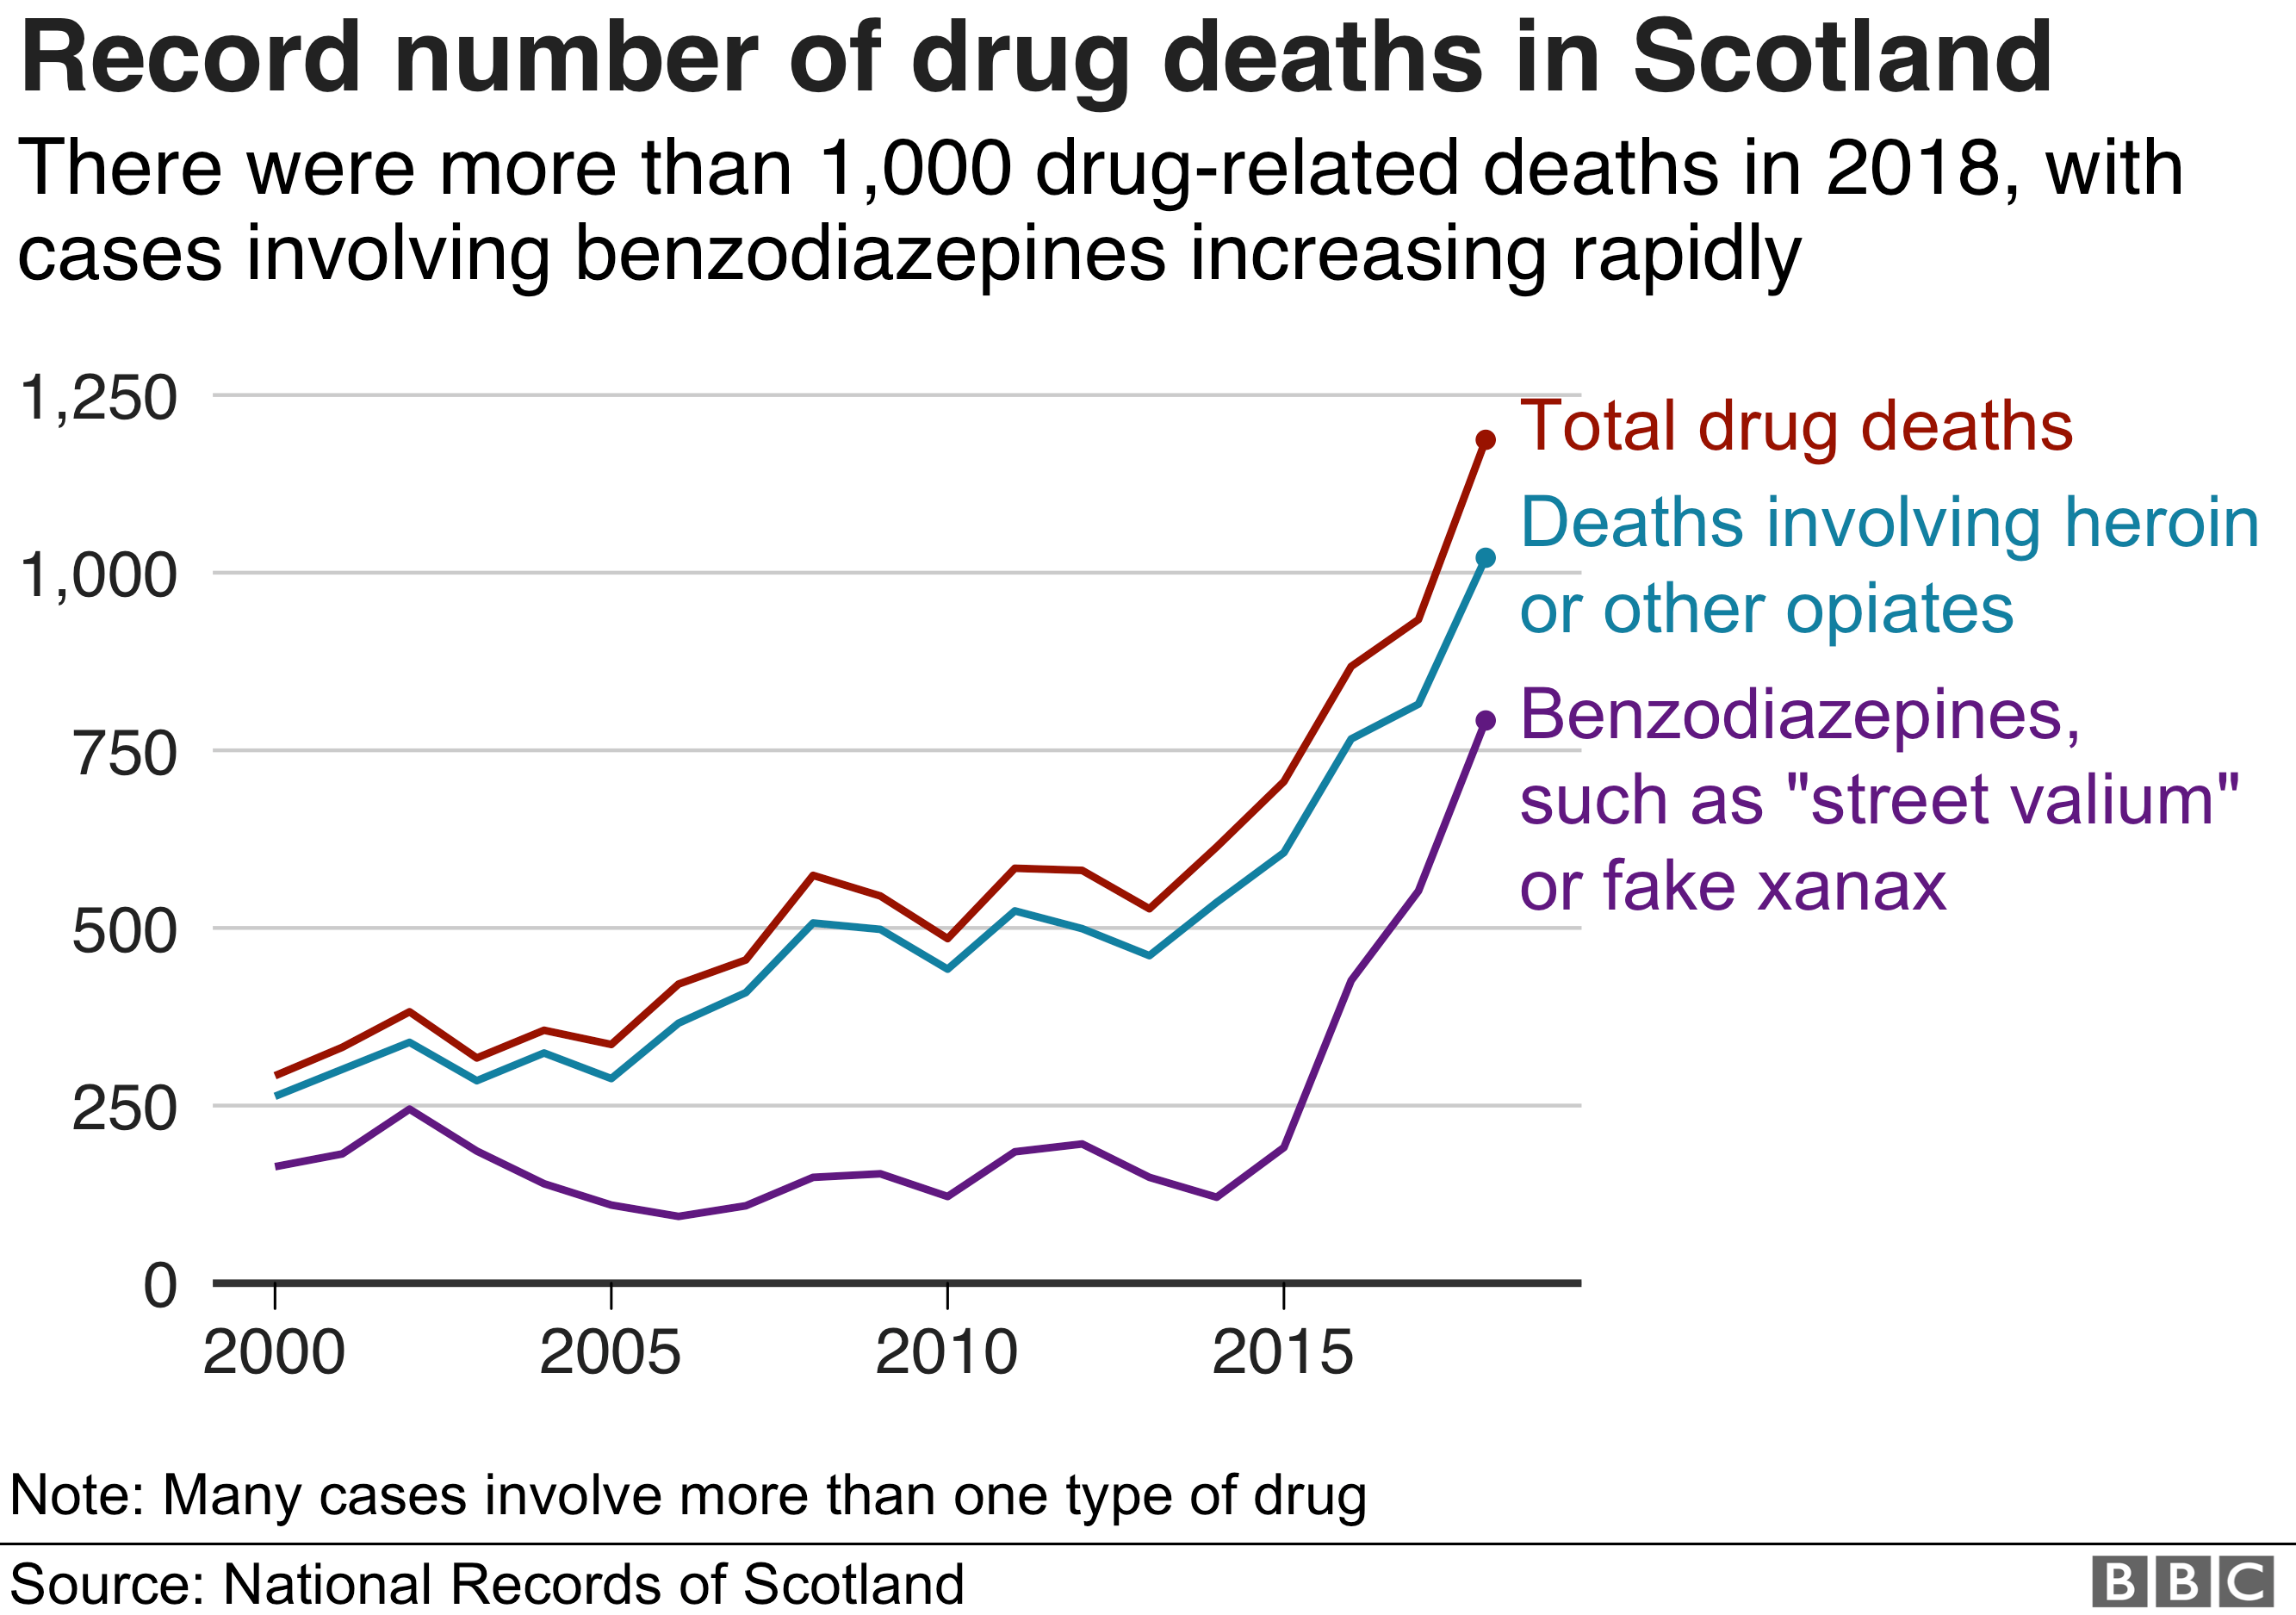 Число смертей от наркотиков в Шотландии снова резко возросло, впервые превысив 1000. Число смертей от героина также превысило 1000 человек по сравнению с 840 в прошлом году. Число смертей, связанных с бензодиазепинами, увеличилось до 797 с 555 в 2017 году